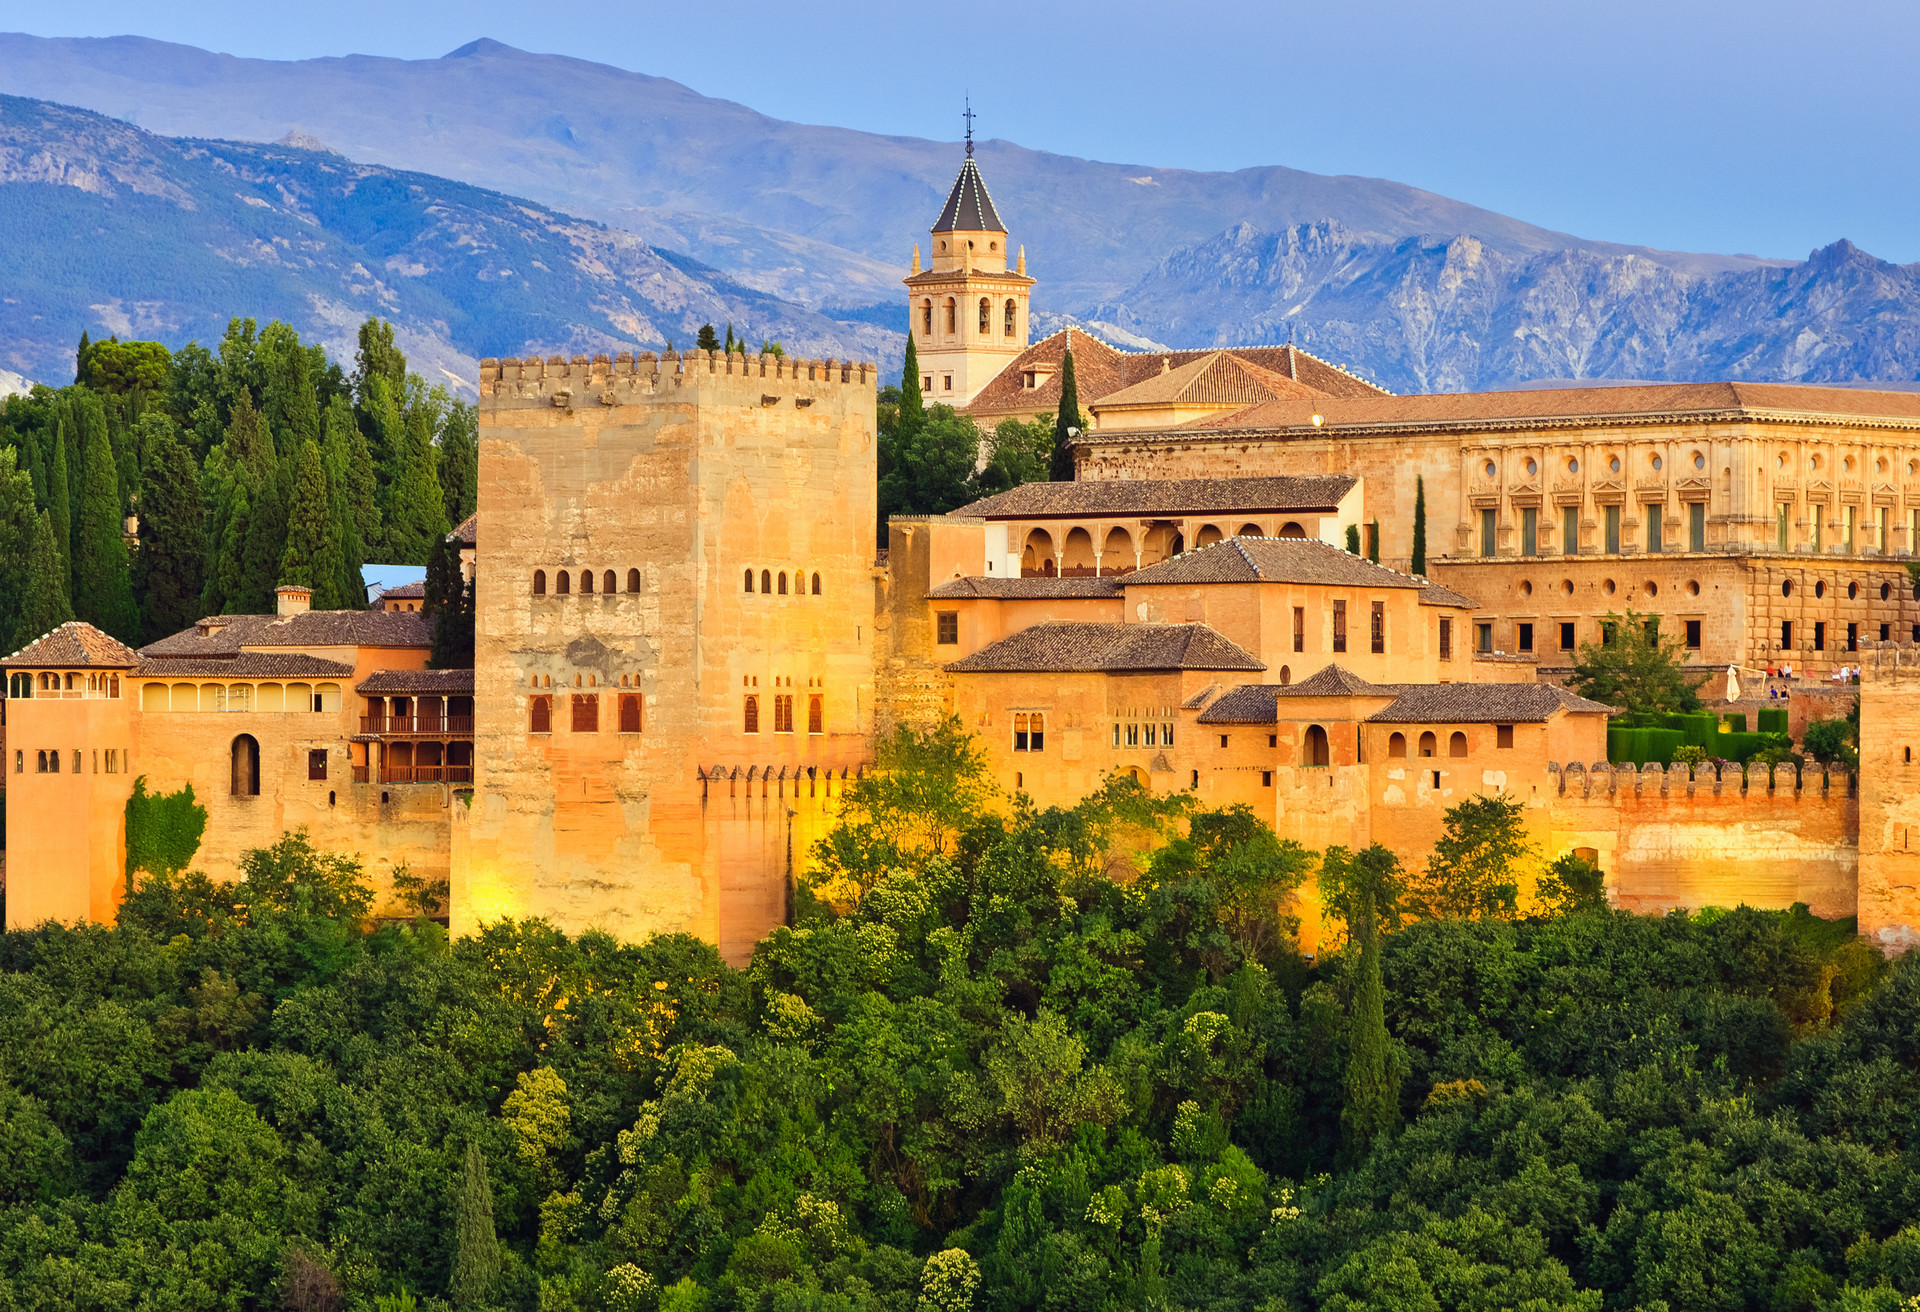 Karten für die majestätische Stadtburg Alhambra solltest du dir im Voraus sichern